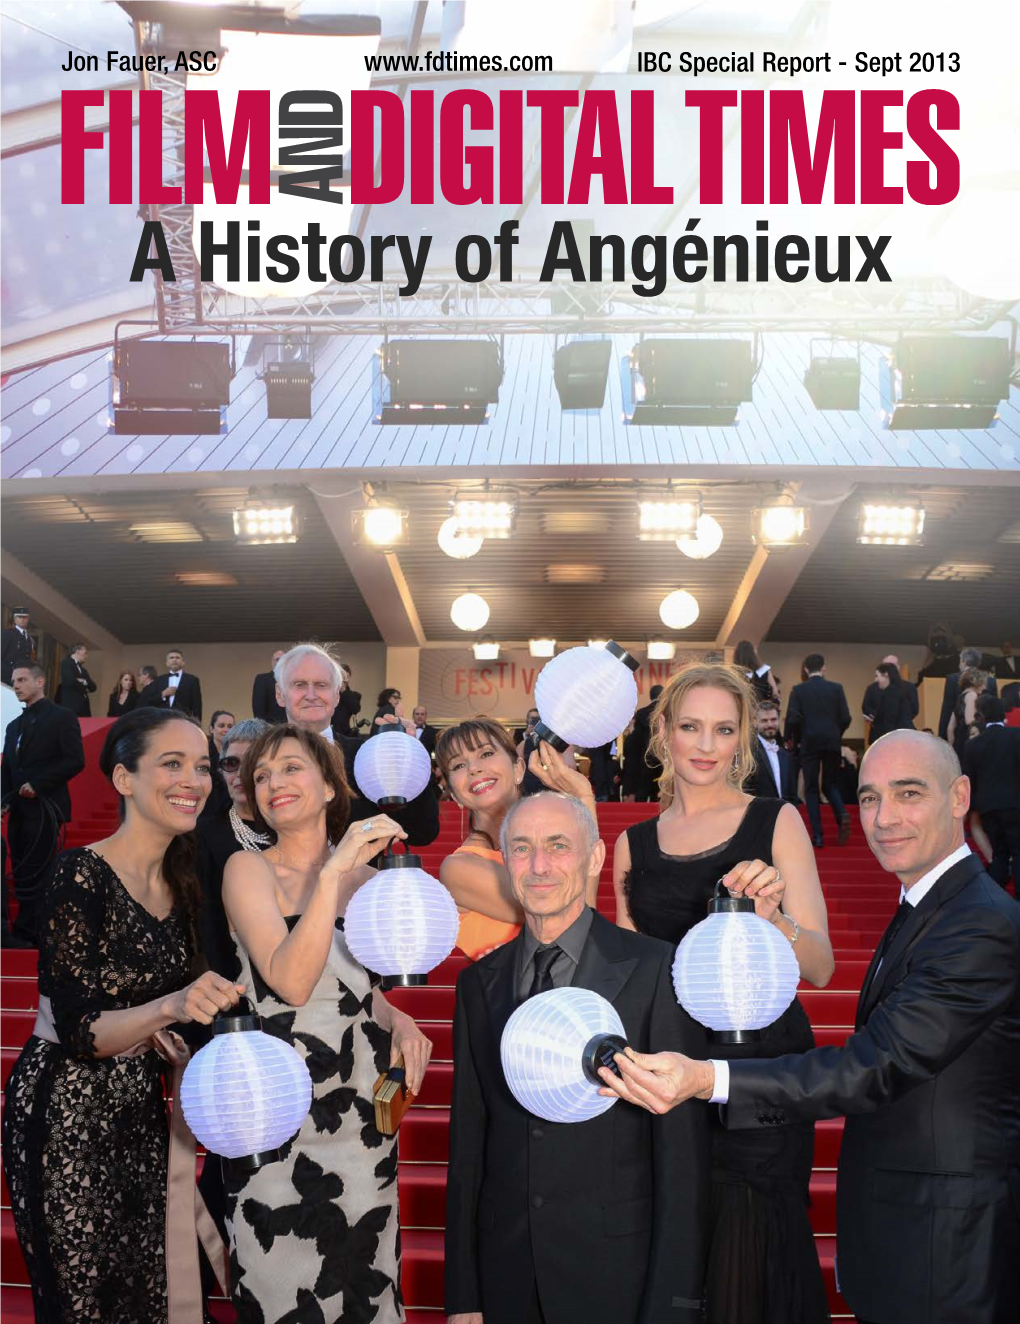 A History of Angénieux